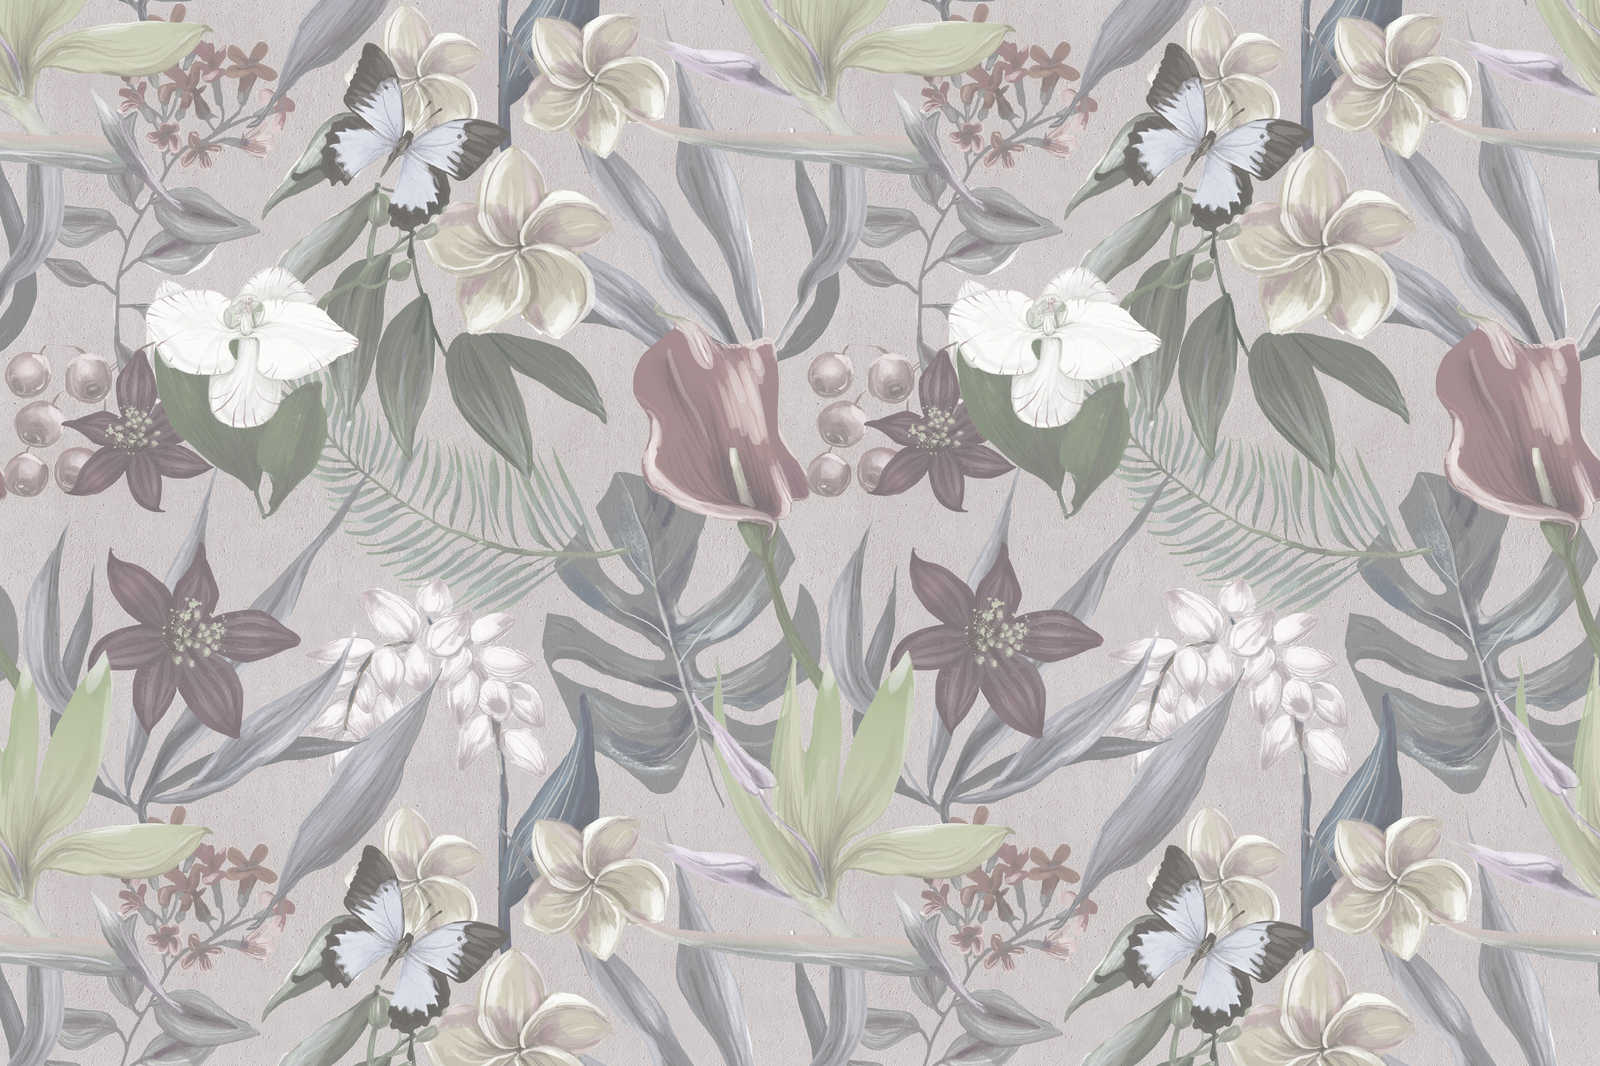             Florales Dschungel Leinwandbild gezeichnet | grau, weiß – 0,90 m x 0,60 m
        